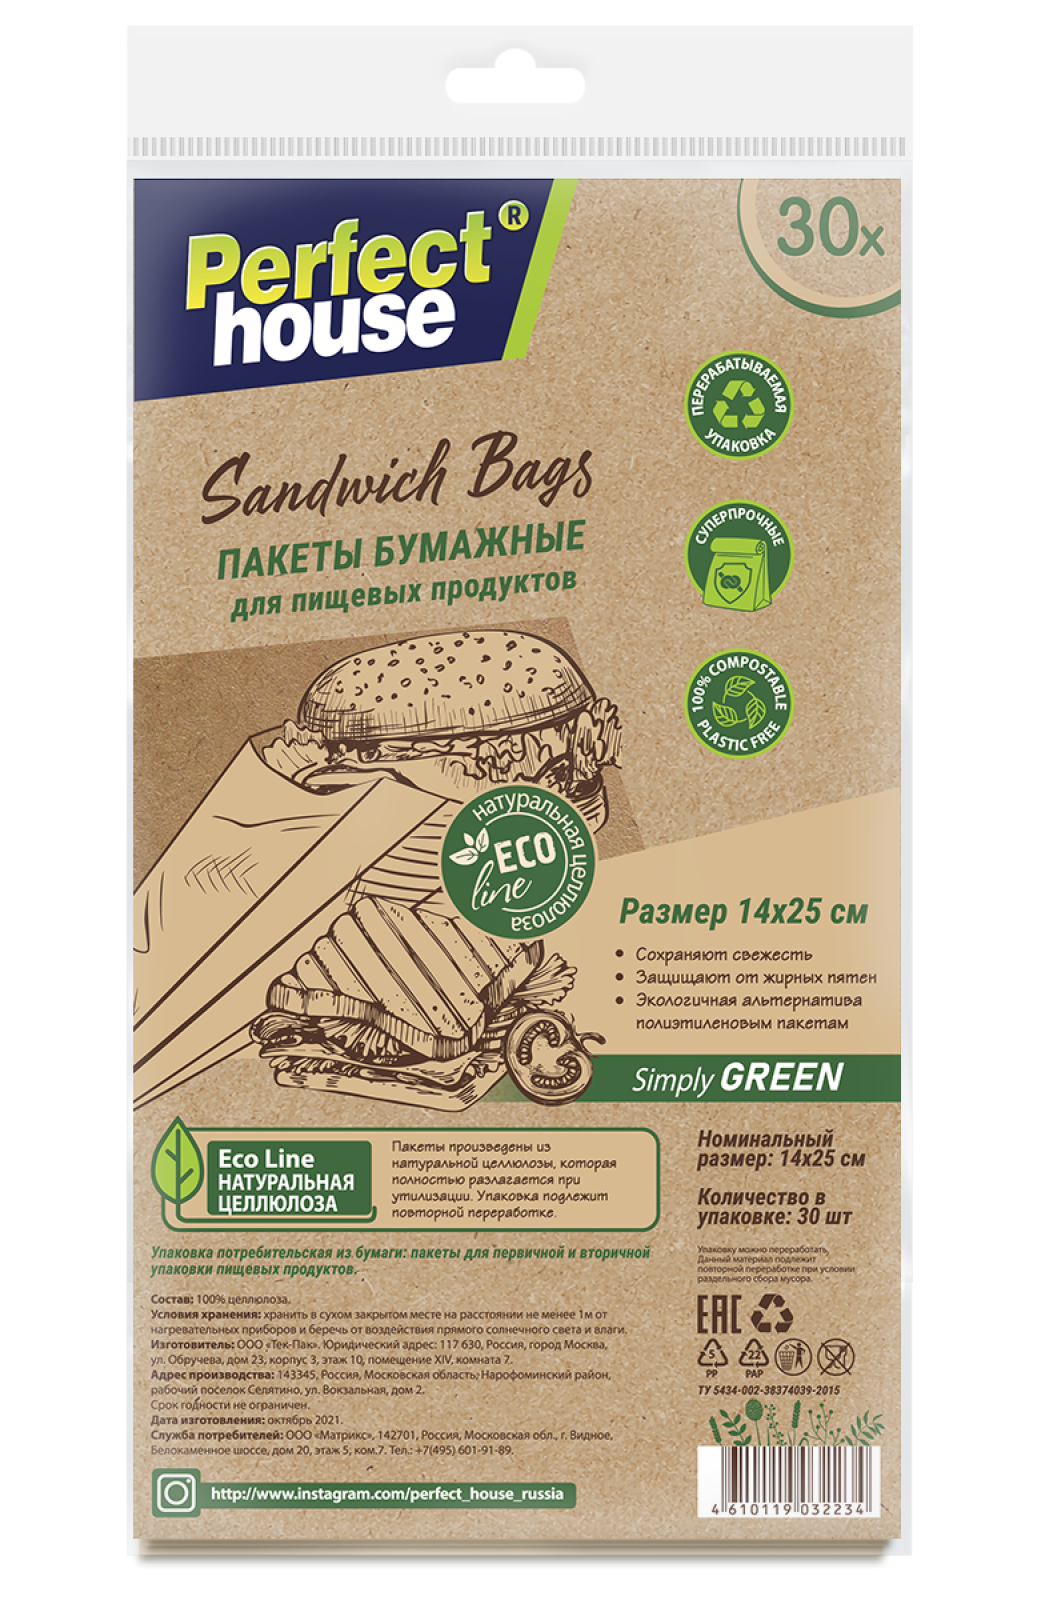 Пакеты для хранения продуктов Perfect House Eco line Sandwich bags 30 шт - фото 1